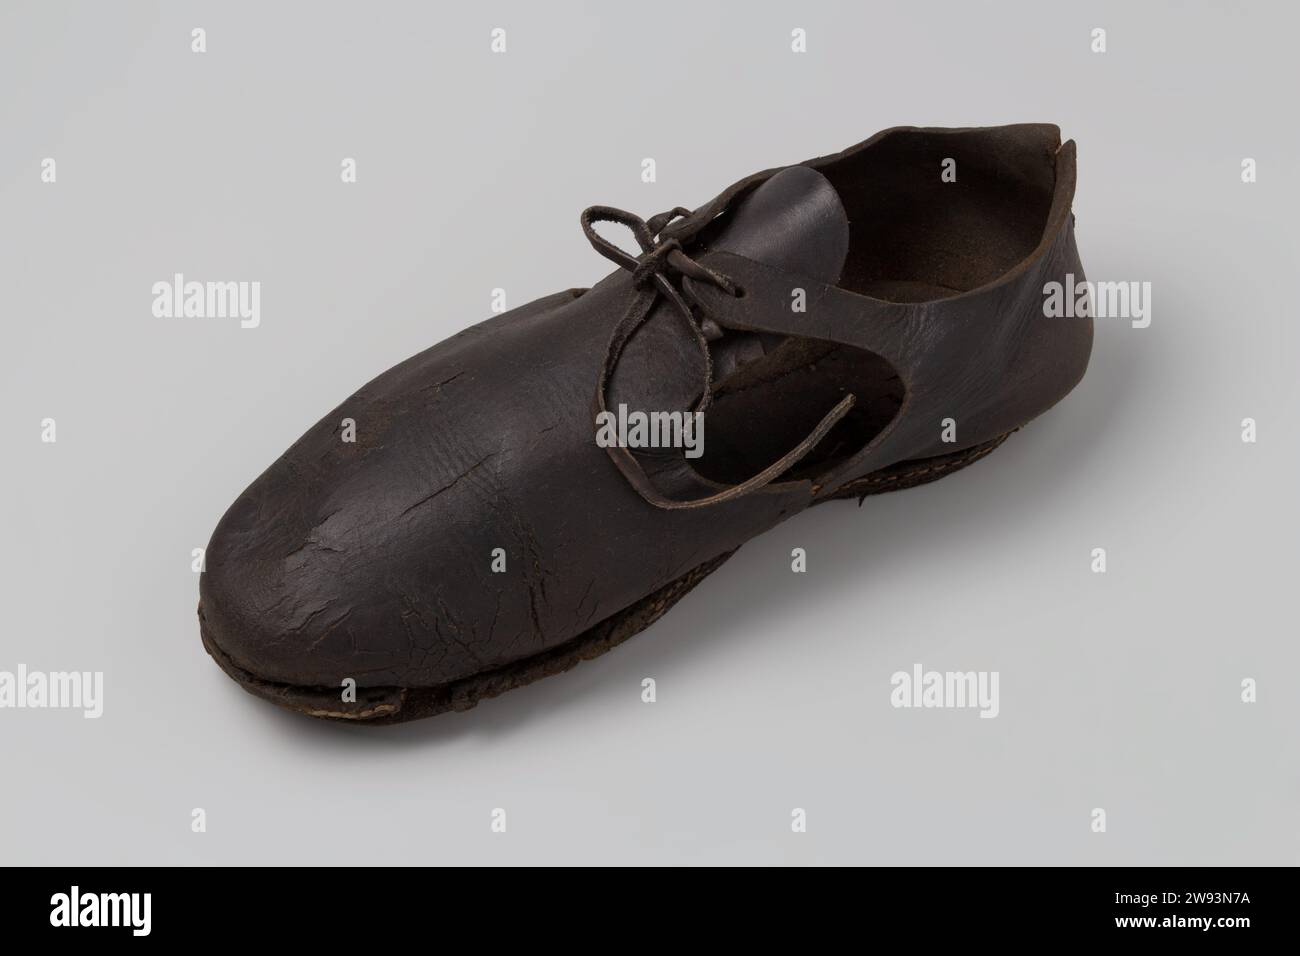 Scarpa in pelle, c. 1400 - c. 1950 scarpa in pelle con pizzi e chiodi in legno sulla parte anteriore della suola. pelle. Legno (materiale vegetale) Zeeuwsche Uytkyck Foto Stock